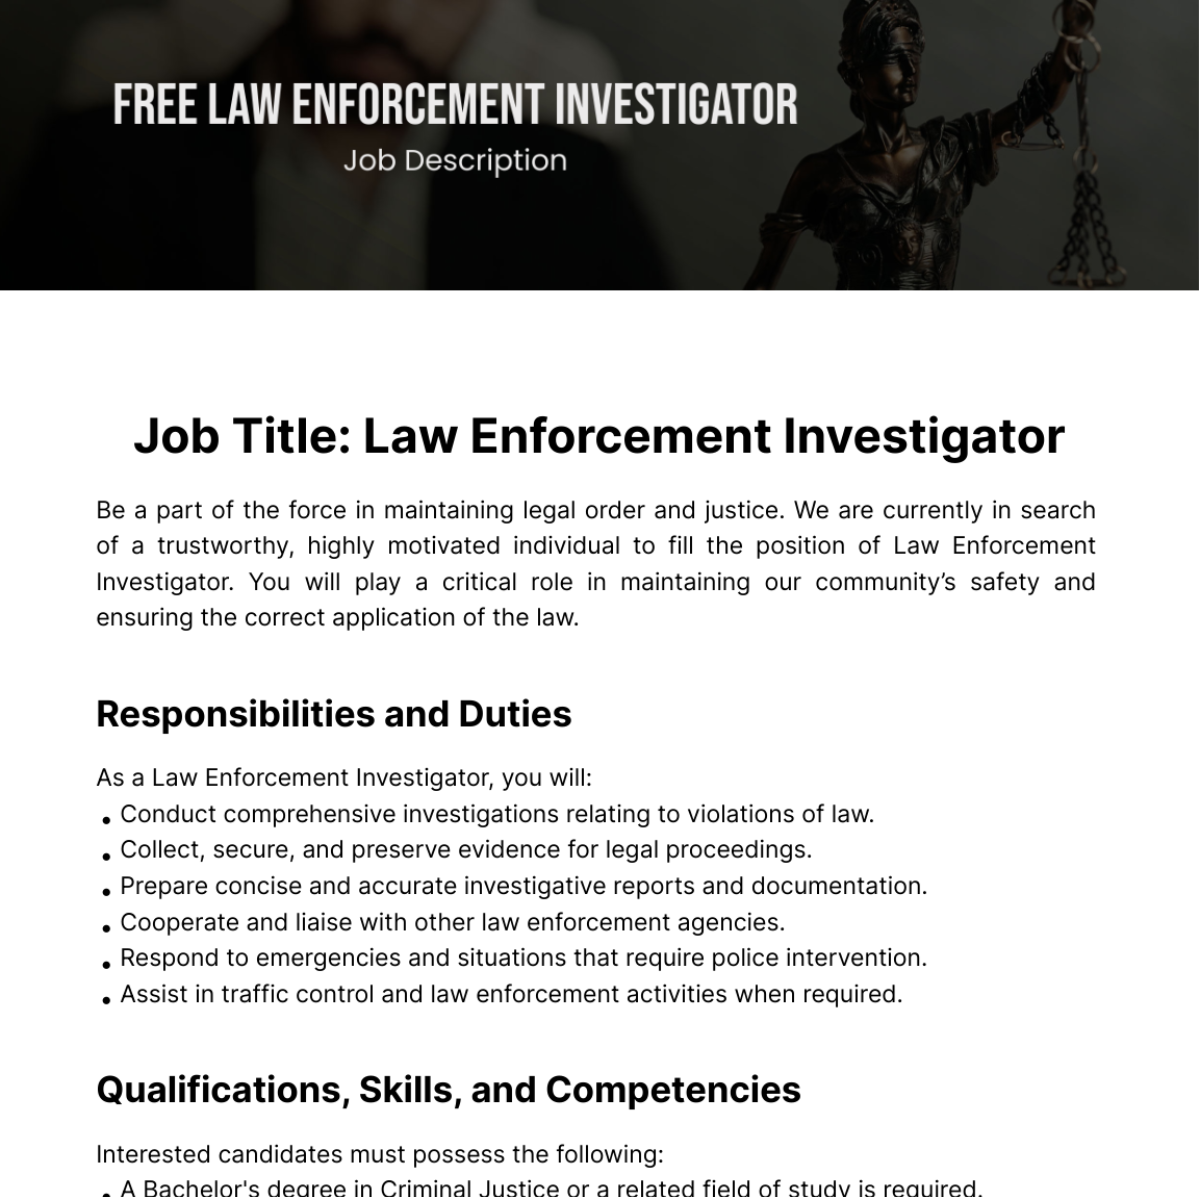 Free Law Enforcement Investigator Job Description Template